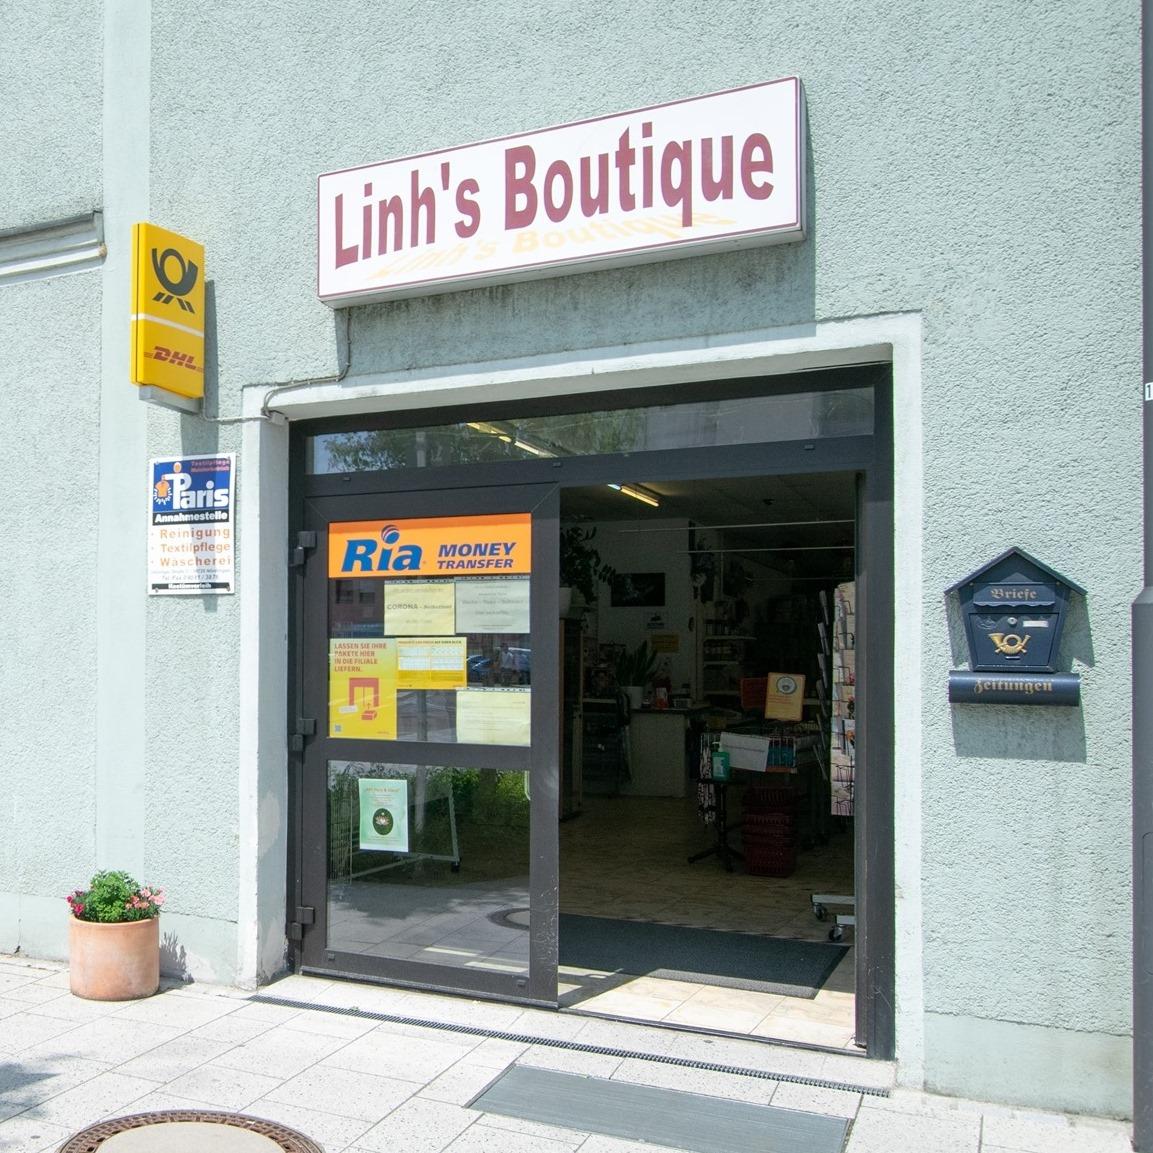 Restaurant "Linhs Boutique" in Höchstädt